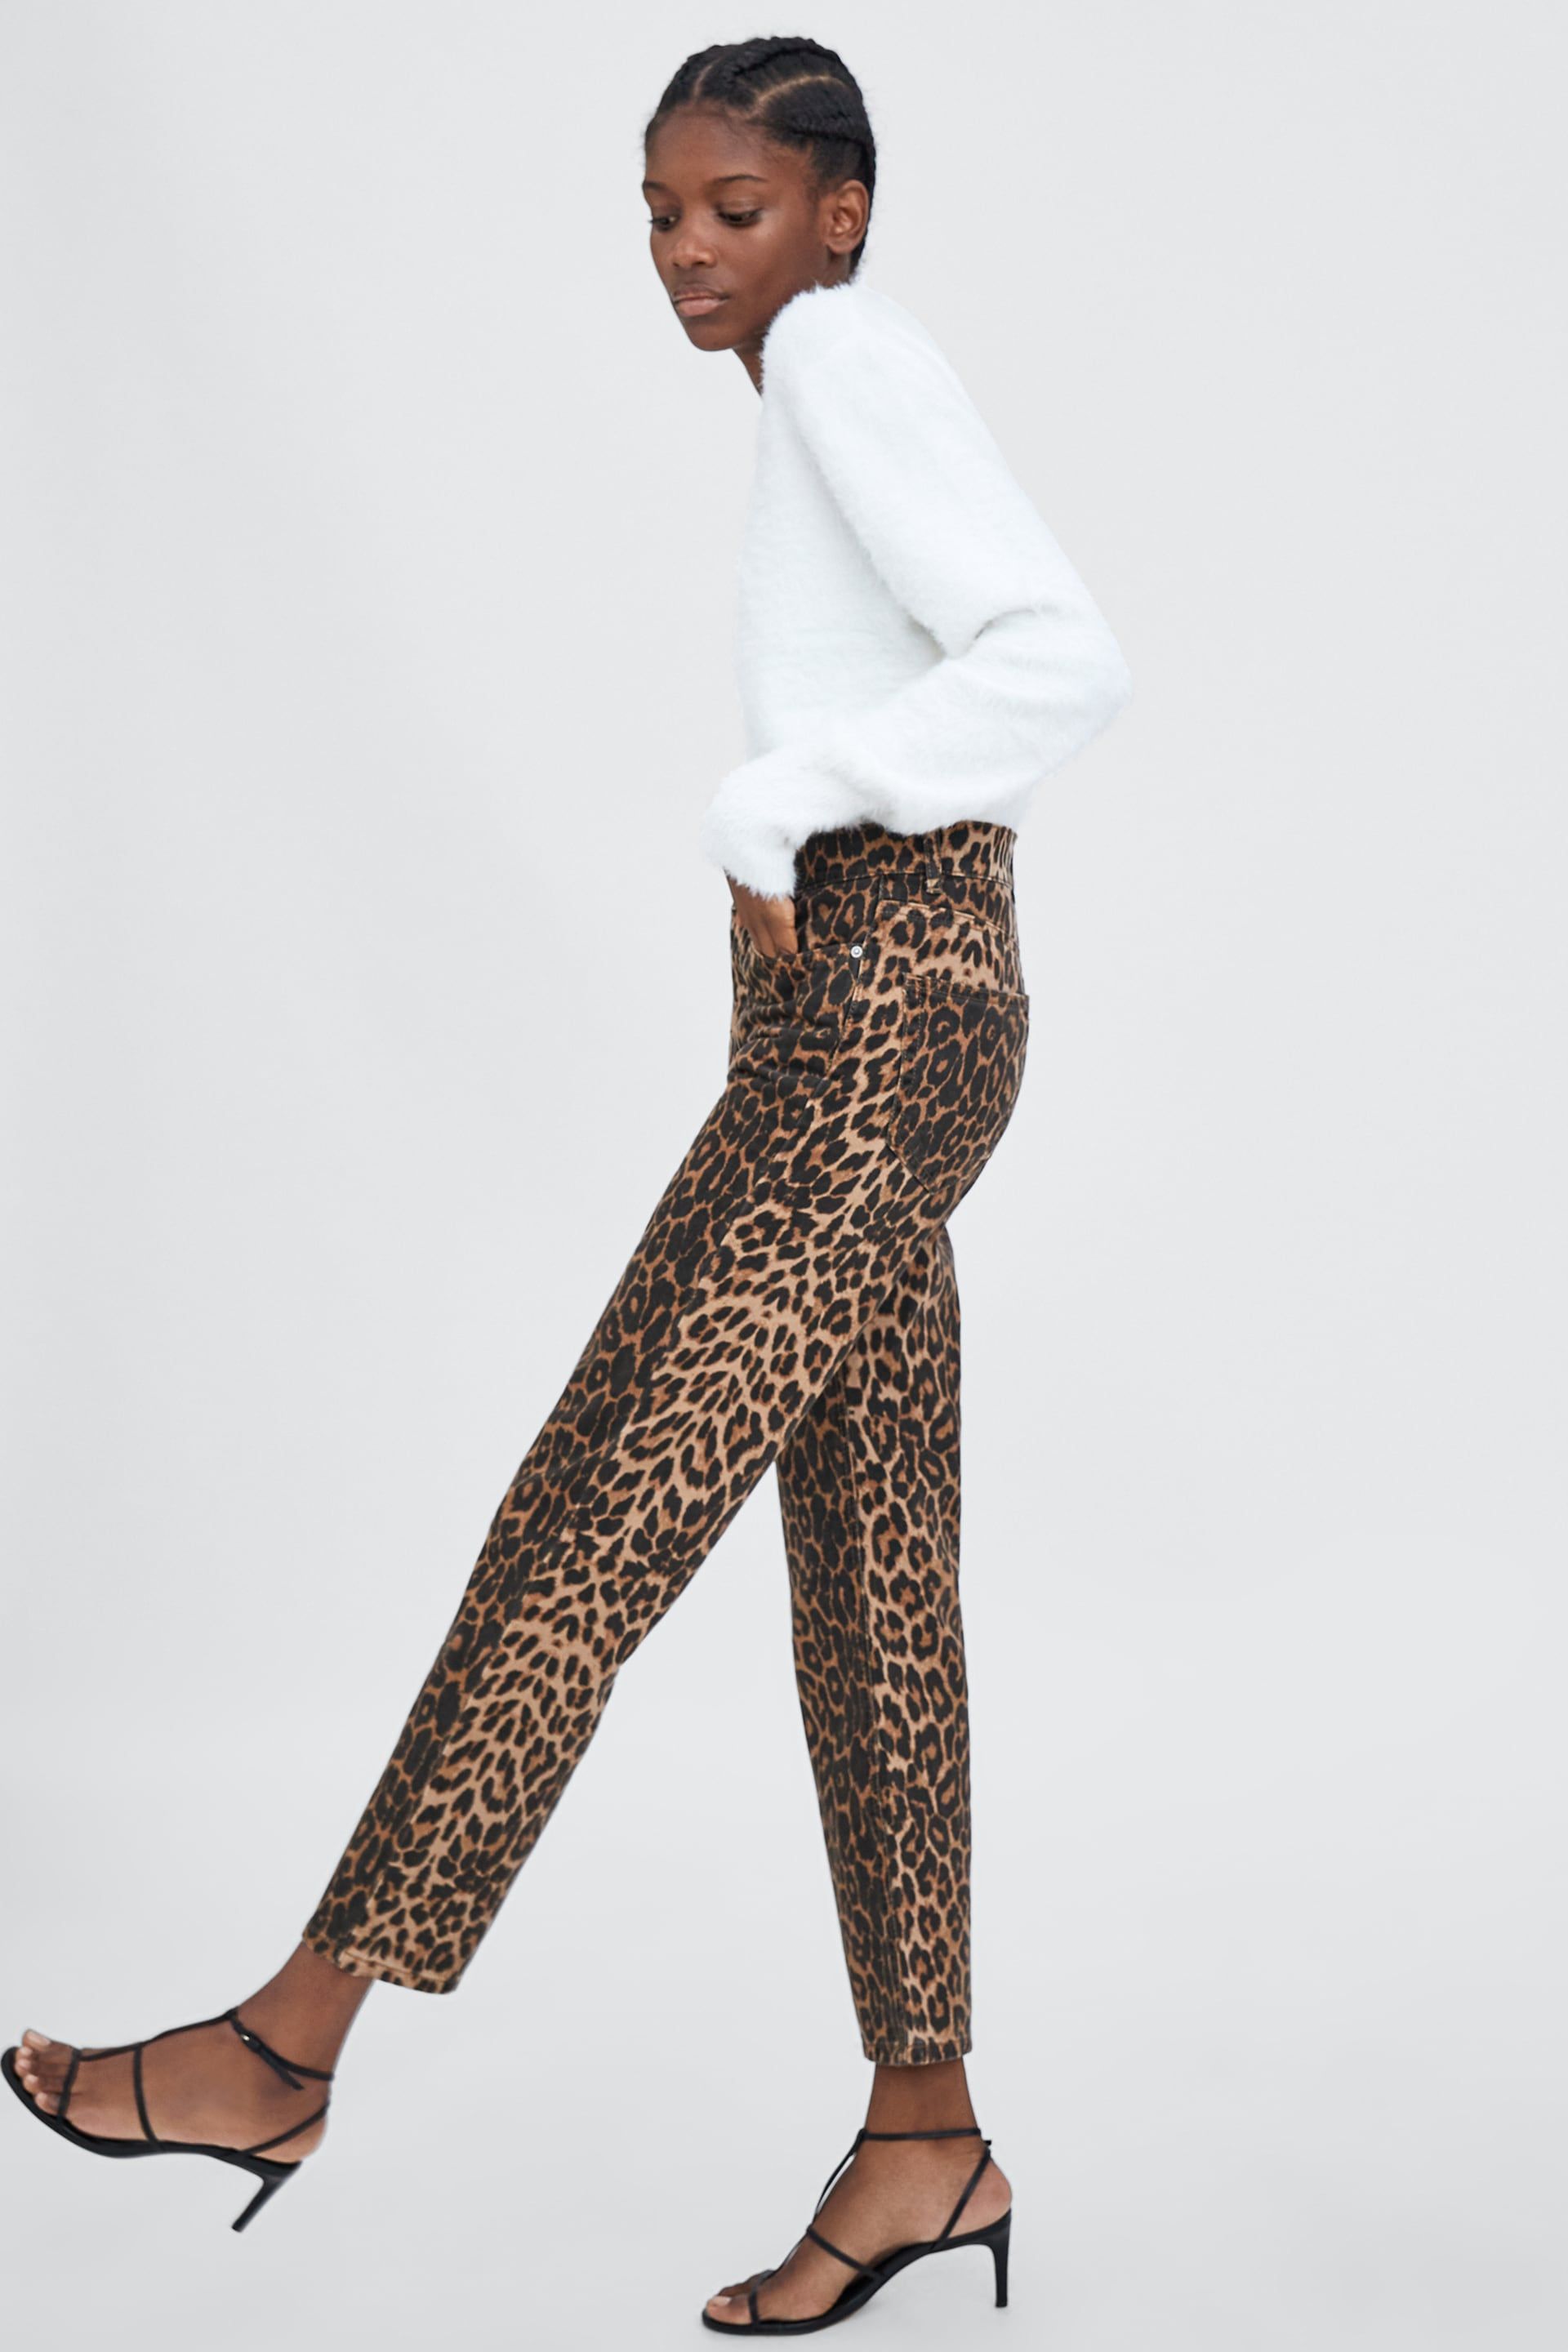 Moda Pantalones Pantalones tobilleros Zara Pantal\u00f3n tobillero estampado de leopardo estilo extravagante 